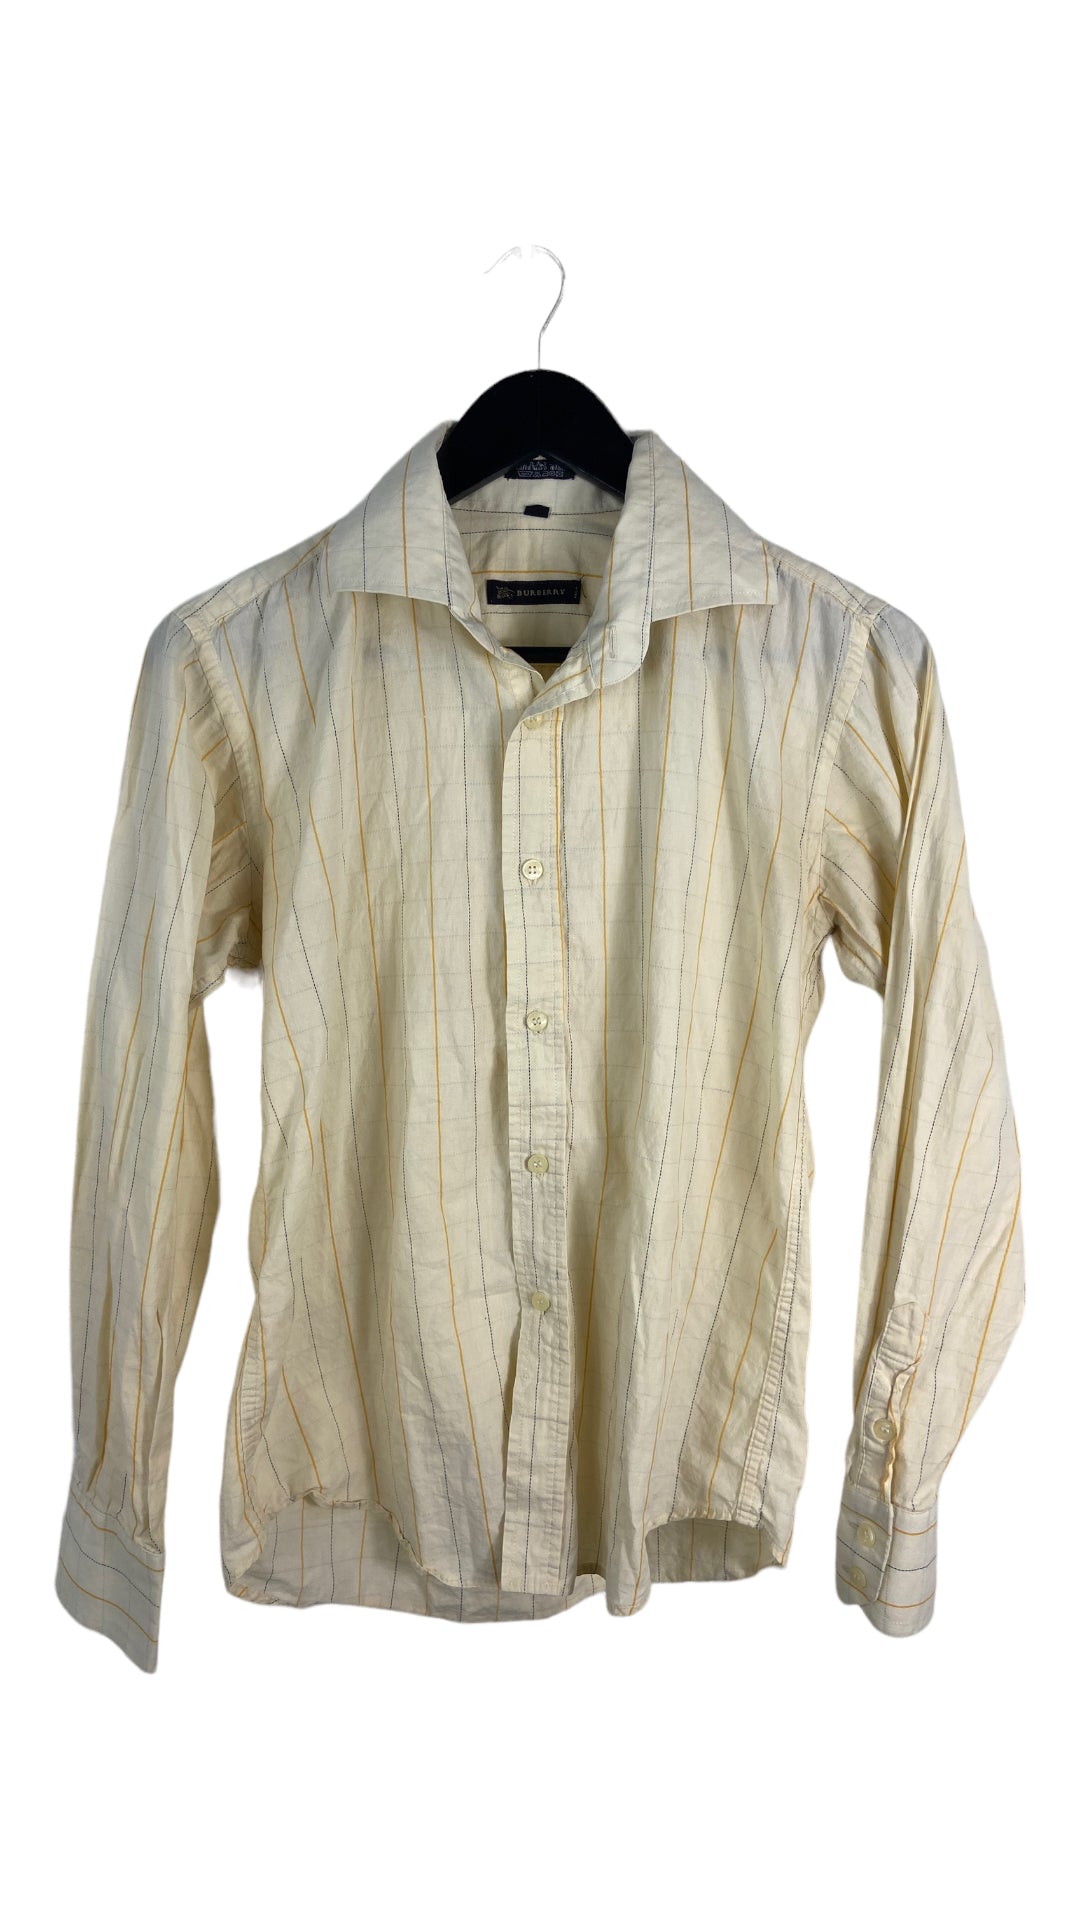 VTG Burberry Yellow Striped Shirt Sz S